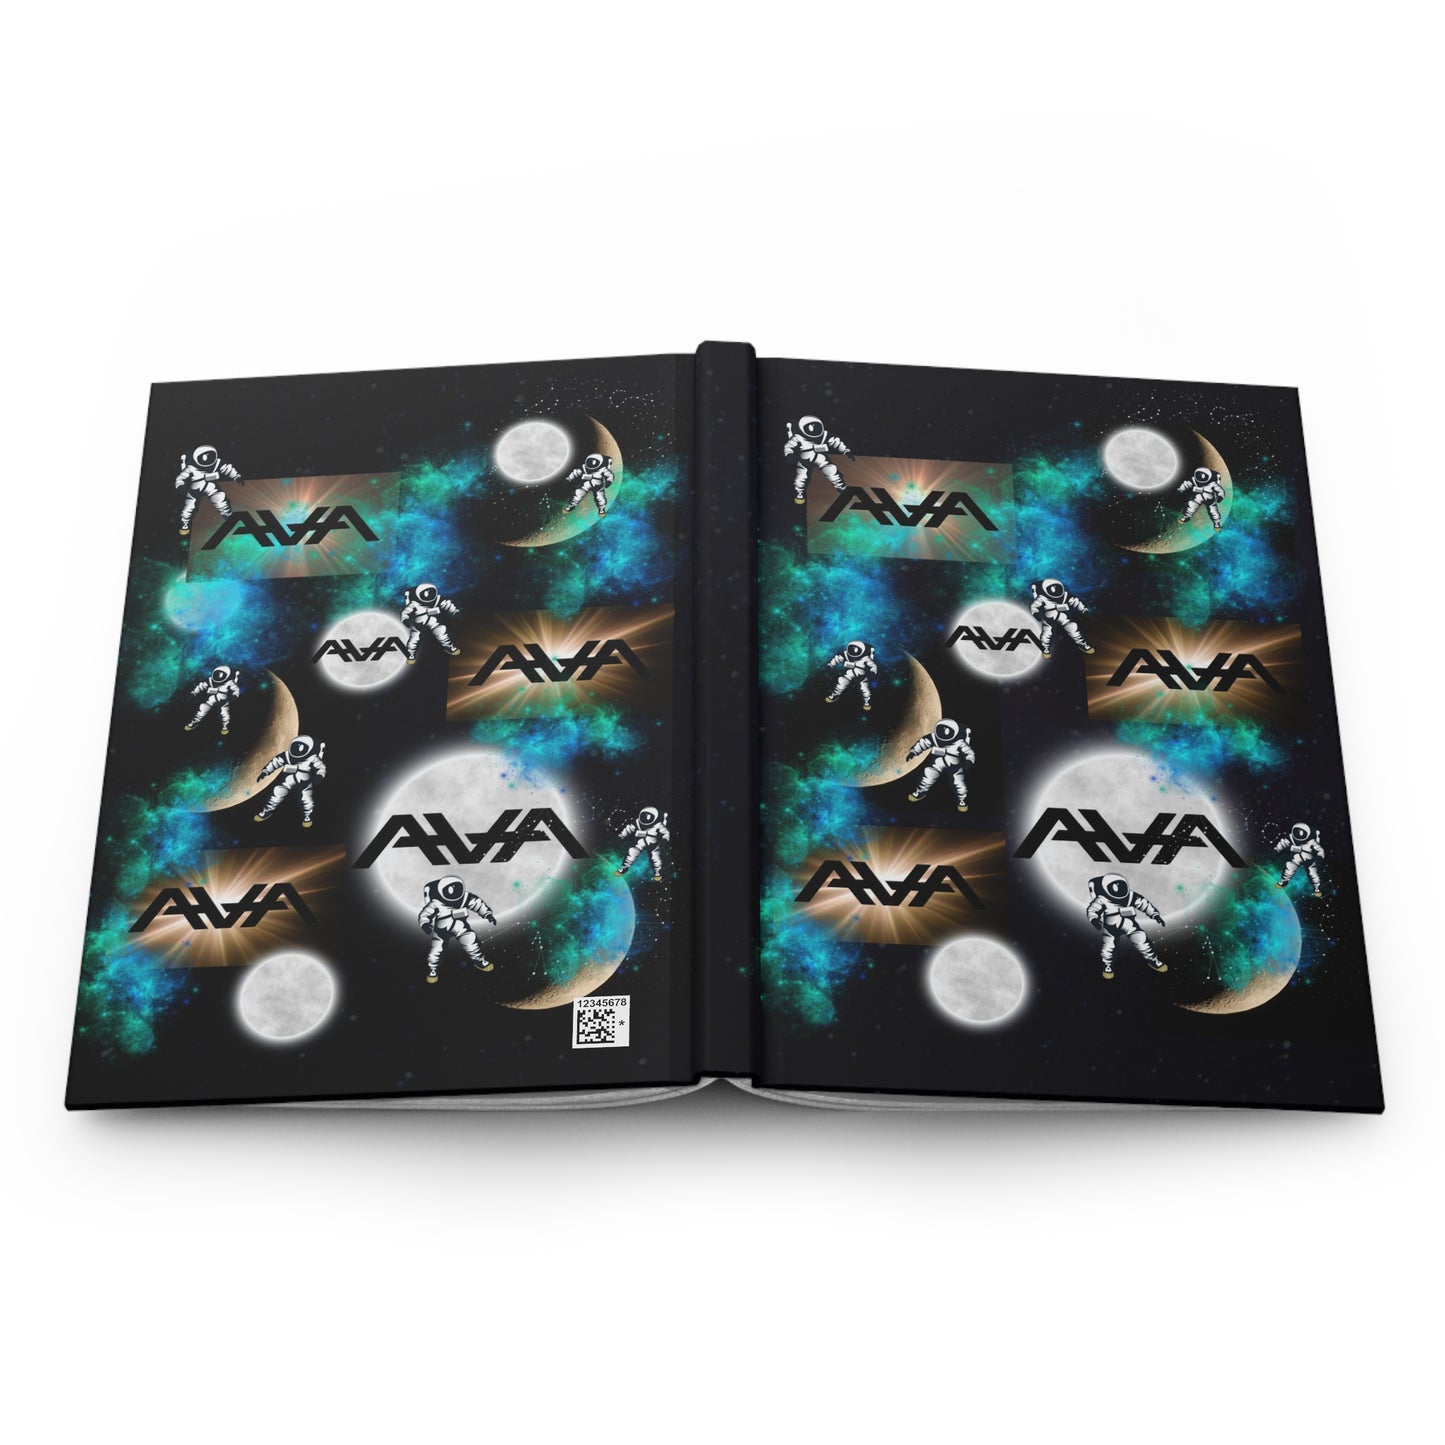 Angels & Airwaves Notebook, Moon Atomic